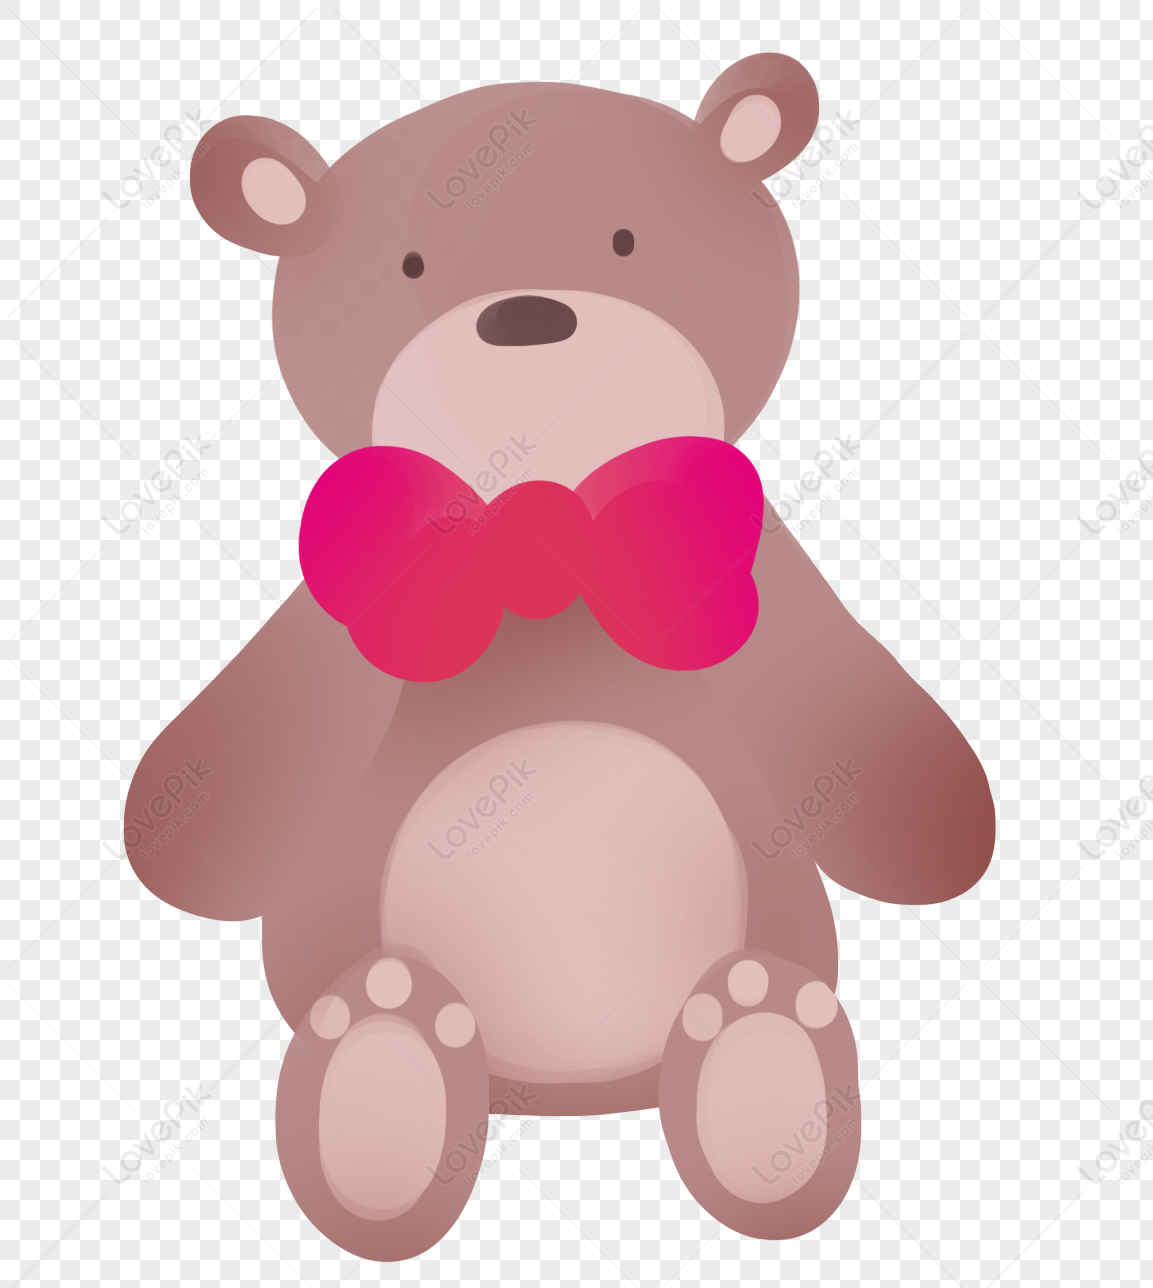 Gấu Teddy, biểu tượng của tình yêu và sự ấm áp, luôn là món quà ưa thích của nhiều người. Hãy xem bức ảnh để tận hưởng vẻ đẹp trẻ trung của chúng.